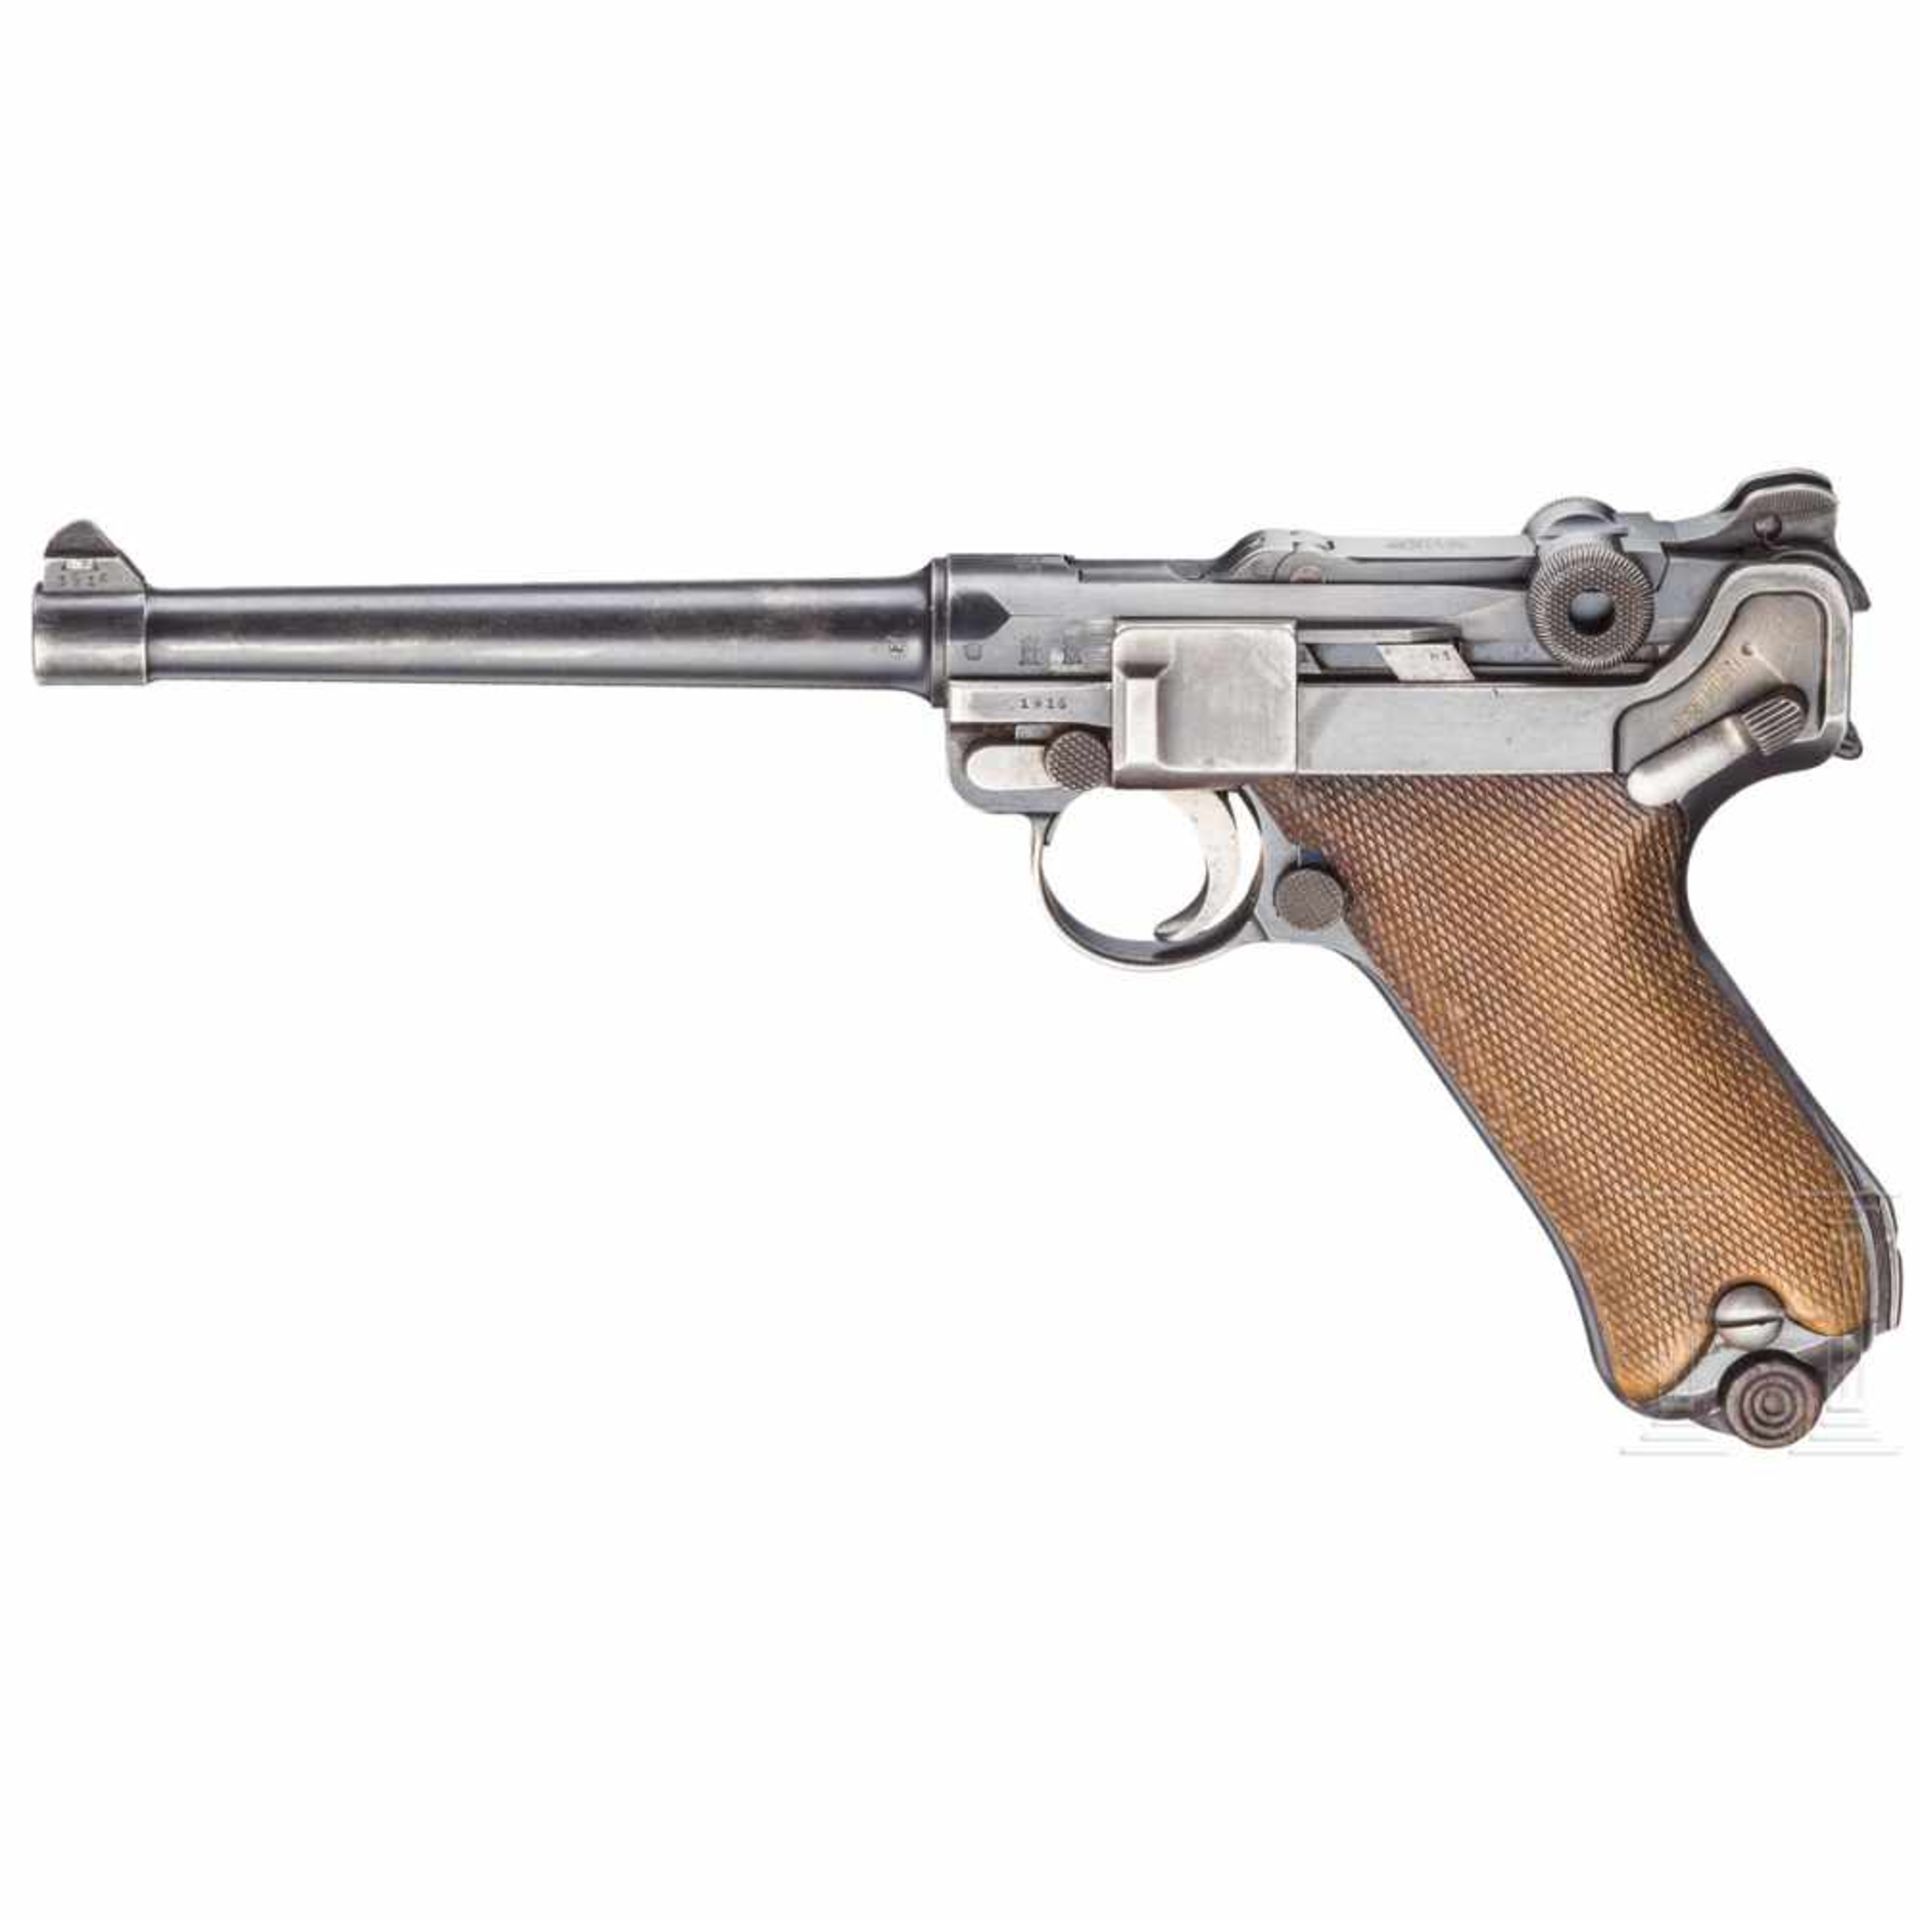 Pistole 04 (1914), DWM 1916Kal. 9 mm Luger, Nr. 5551, Nummerngleich. Lauf matt, Länge 150 mm.